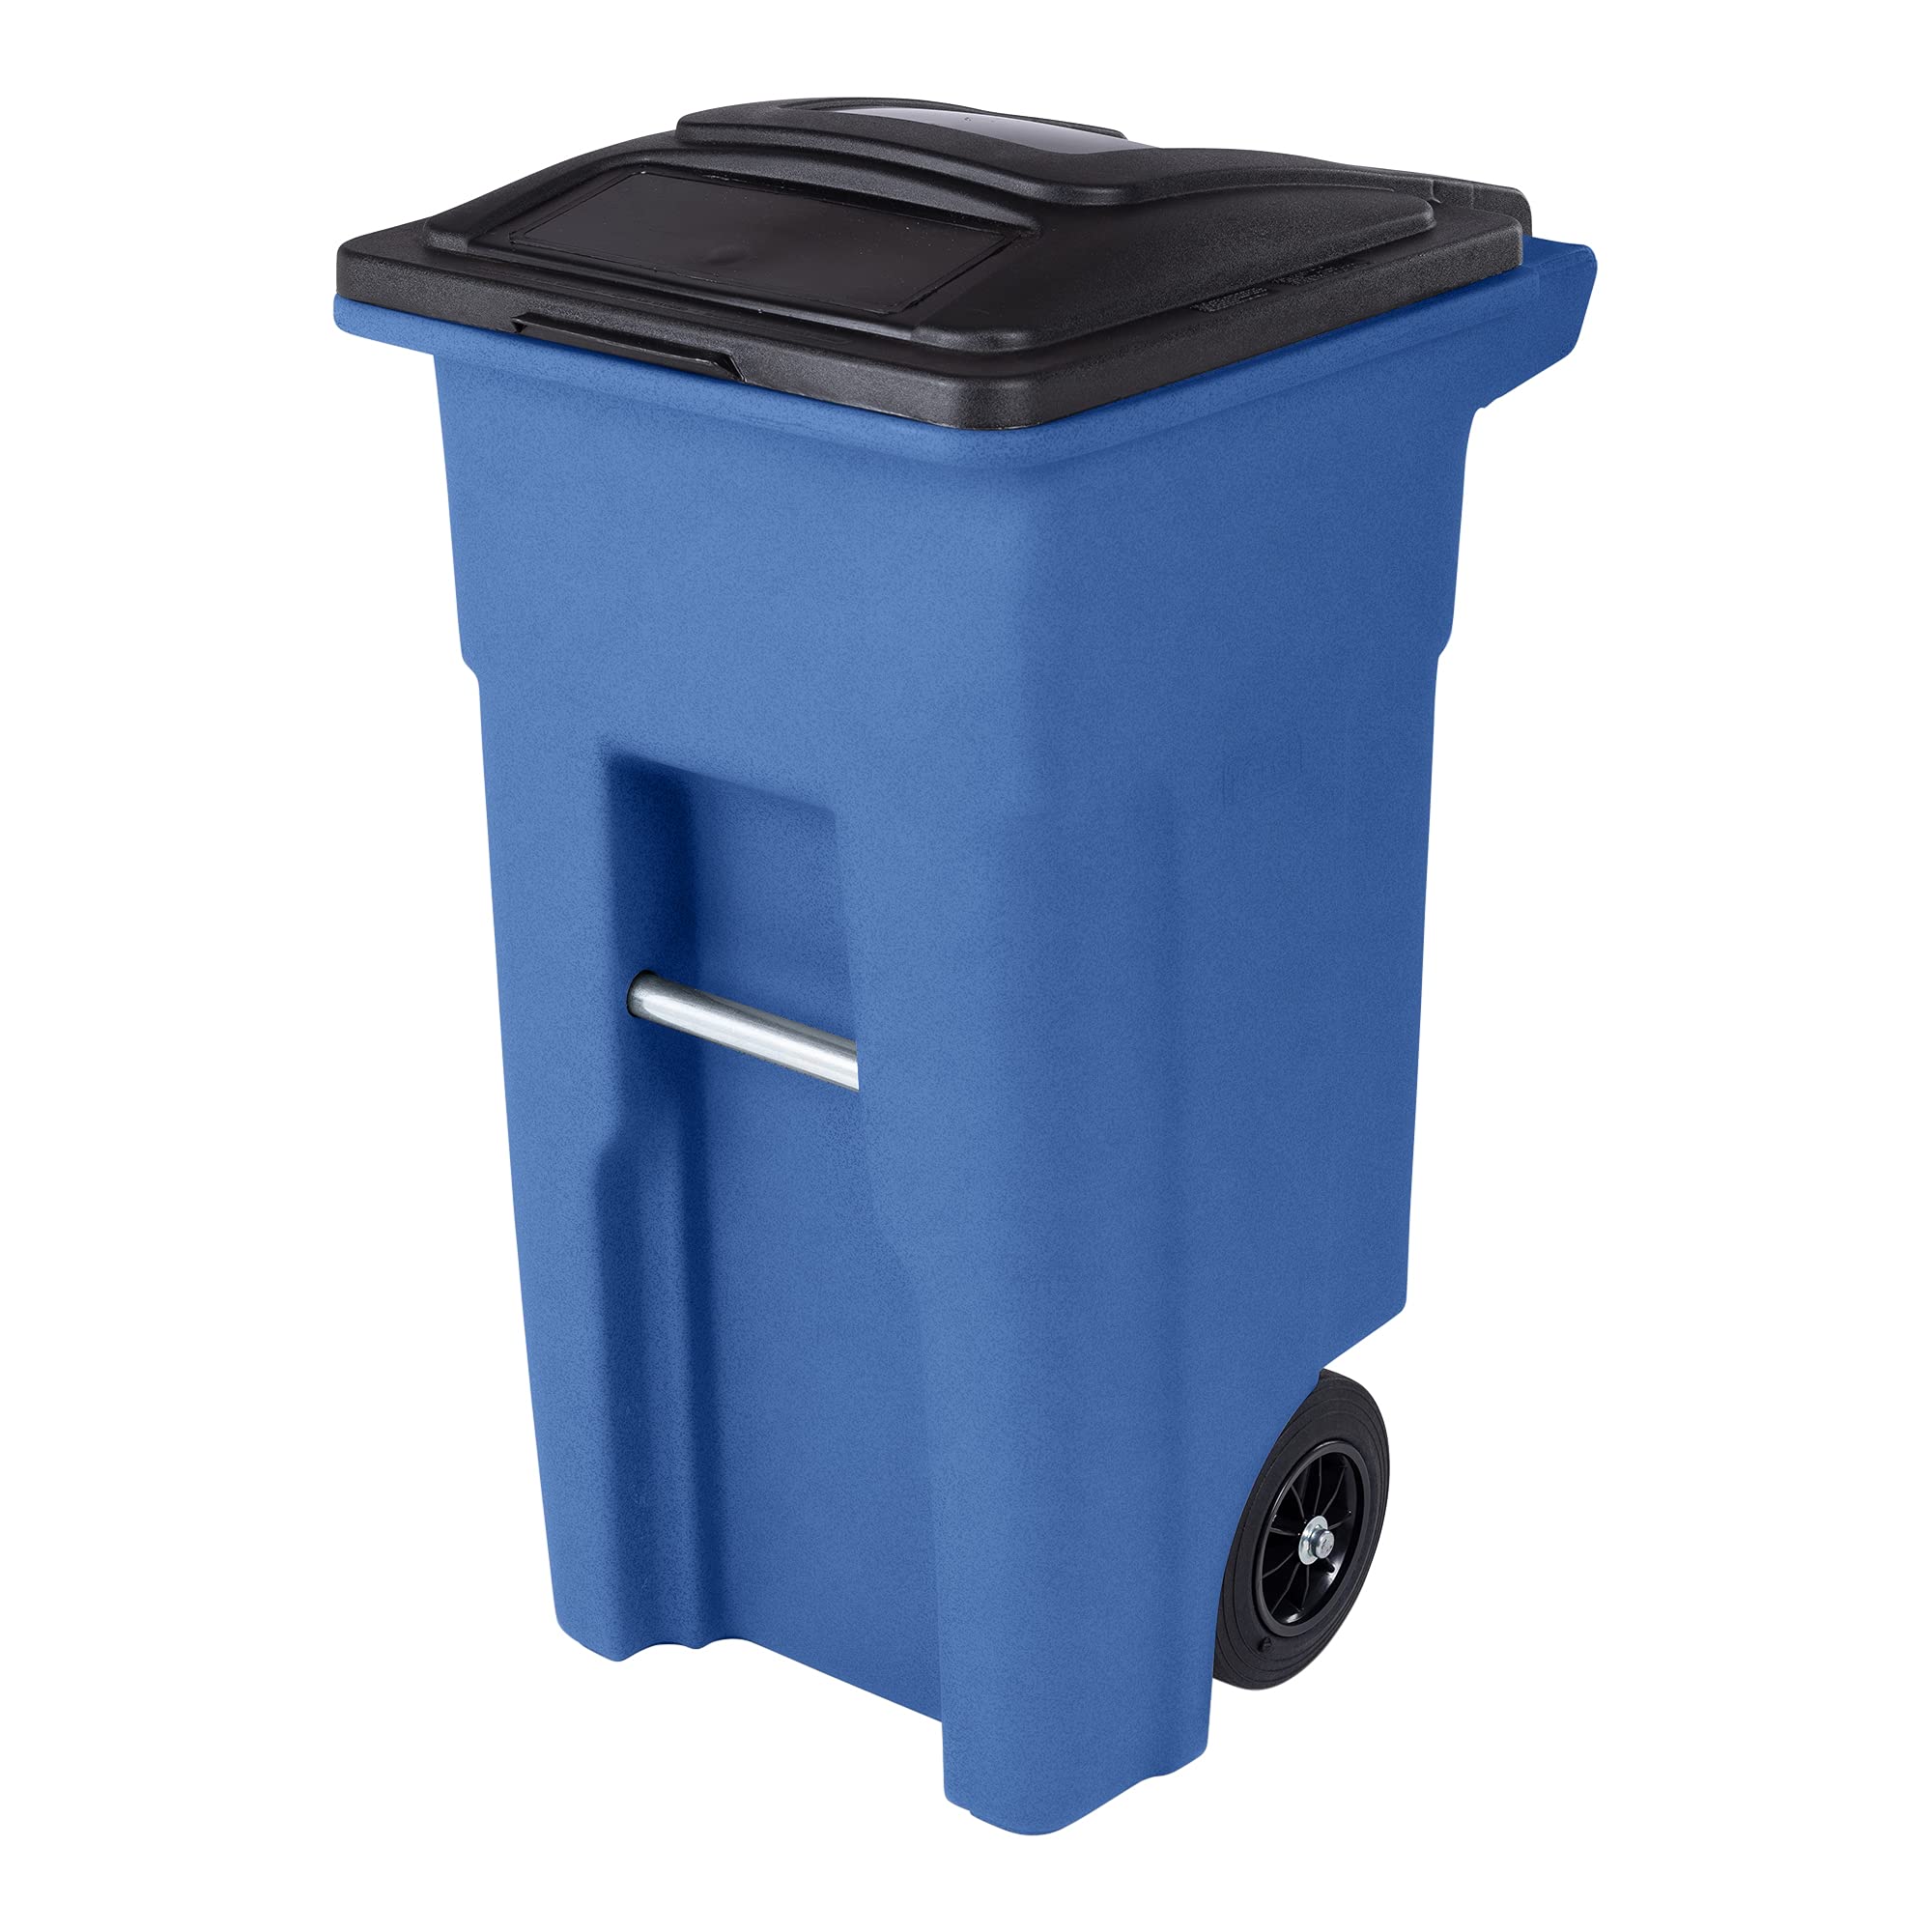 Toter 32 galones Bote de basura azul con ruedas silenciosas y tapa negra adjunta